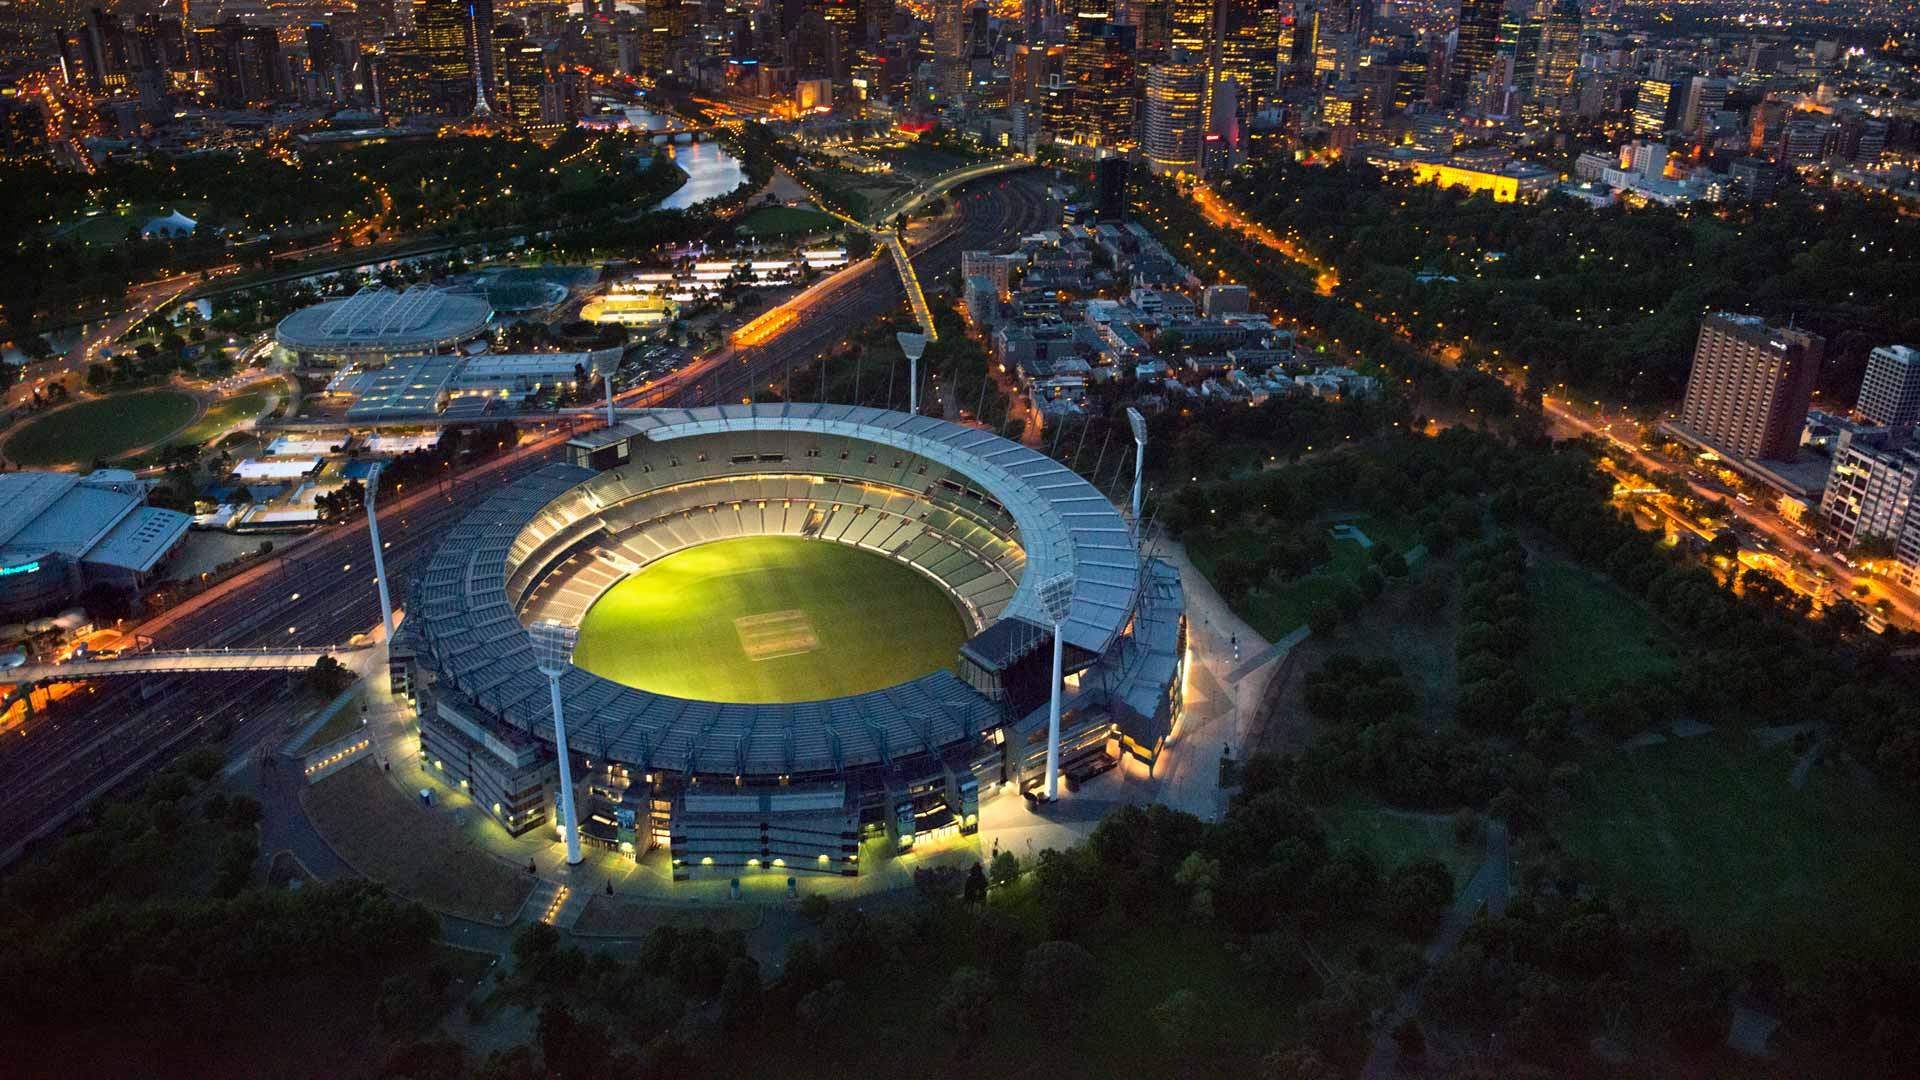 Крикет граунд. Мельбурн крикет Граунд. Стадион крикет Граунд. Мельбурн крикет Граунд внутри. Мельбурн стадион.